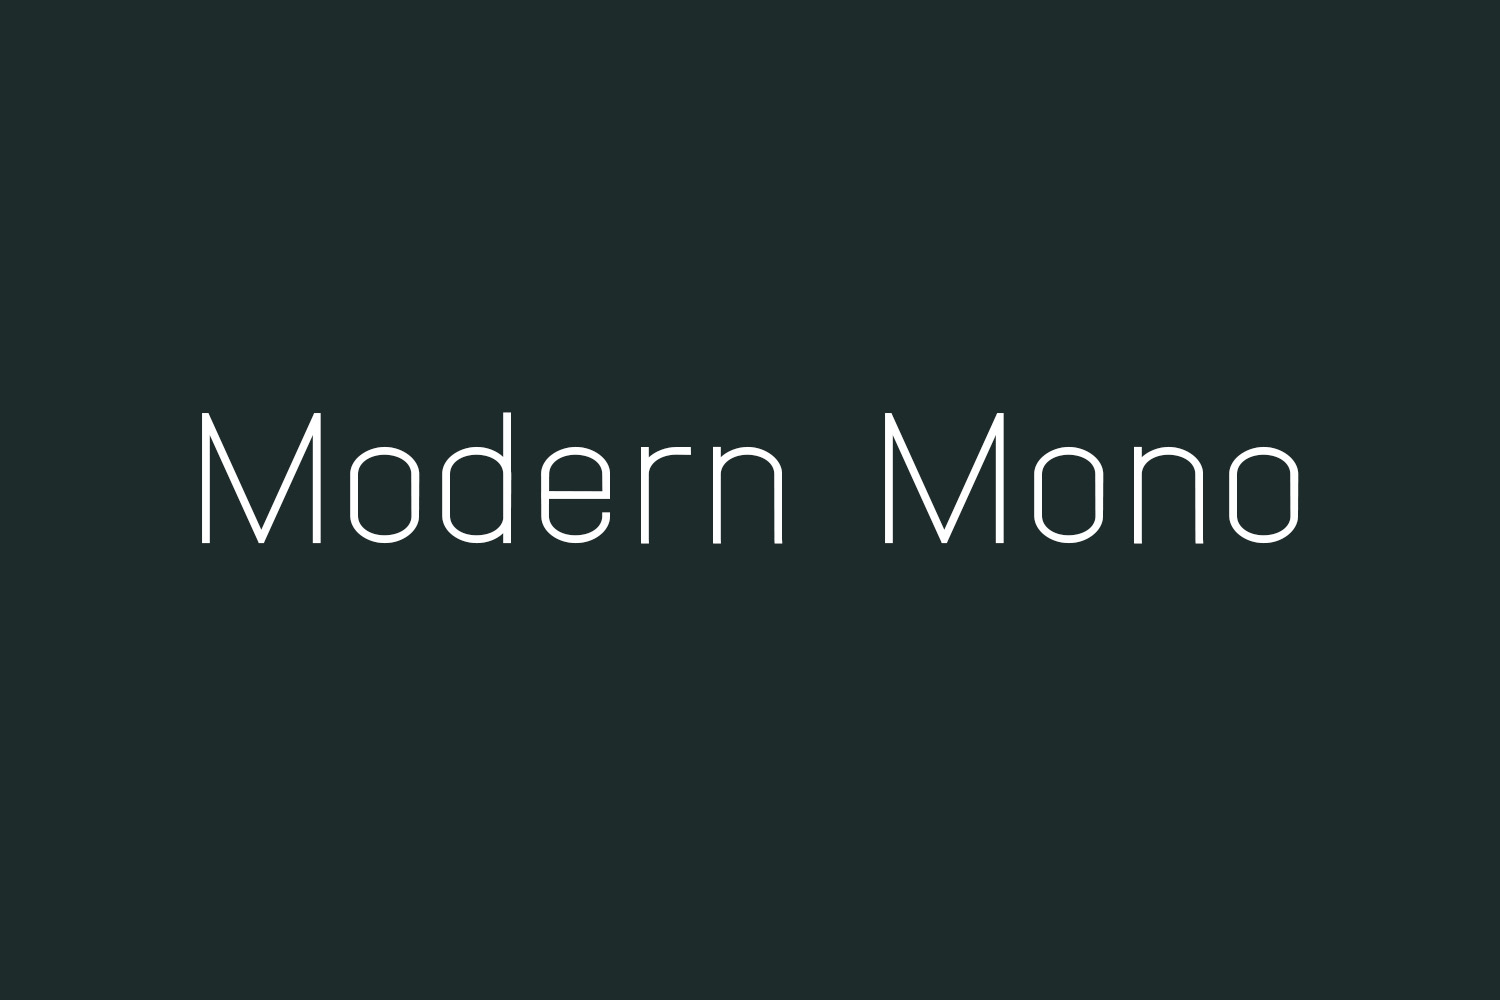 Modern Mono Free Font